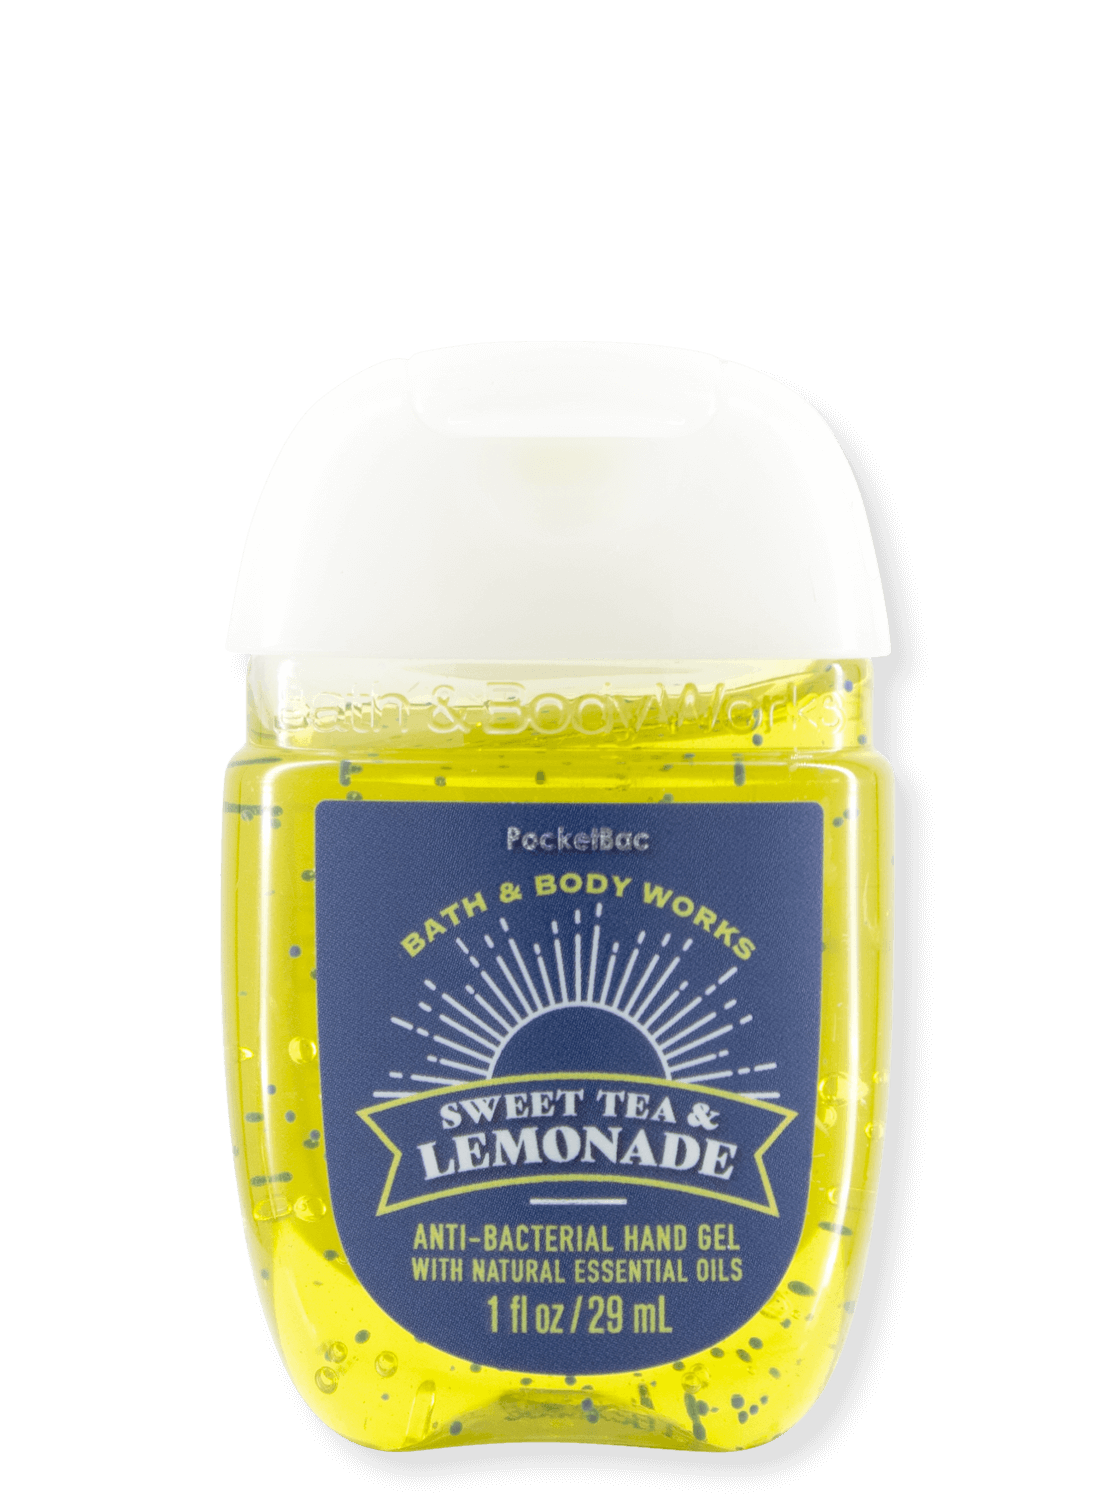 Hand-Desinfektionsgel - Sweet Tea & Lemonade - 29ml